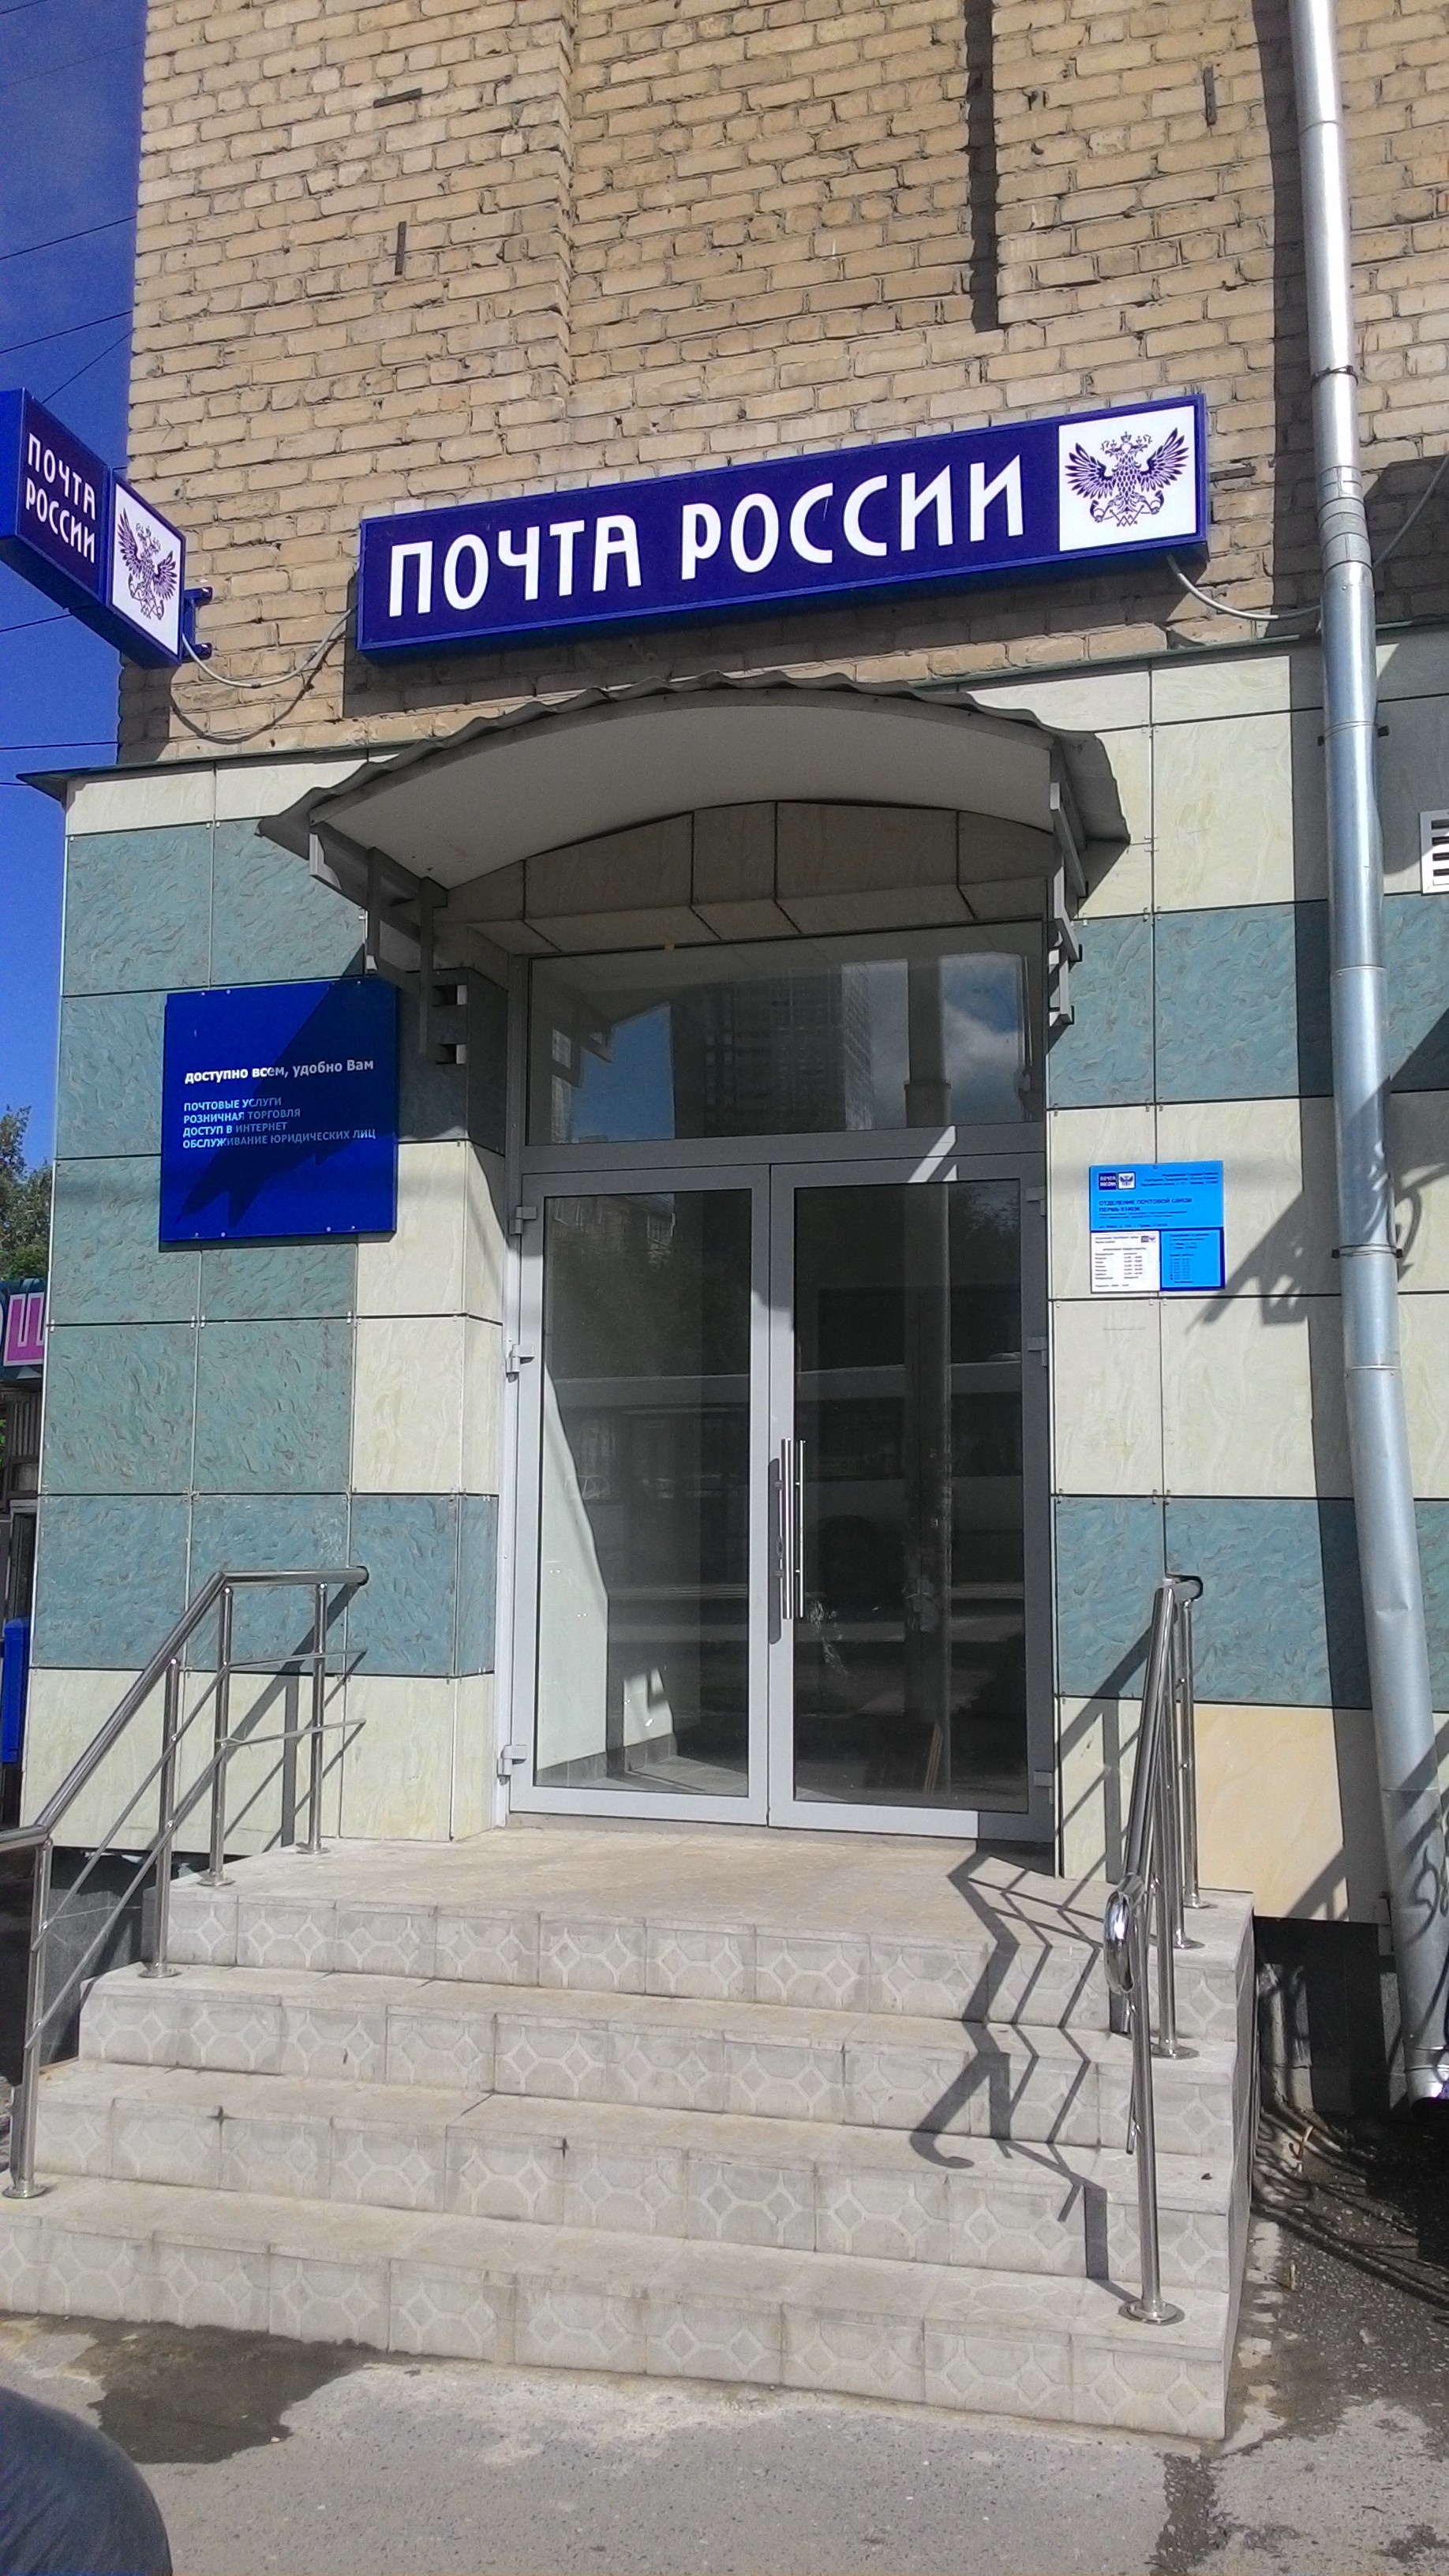 ВХОД, отделение почтовой связи 614036, Пермский край, Пермь